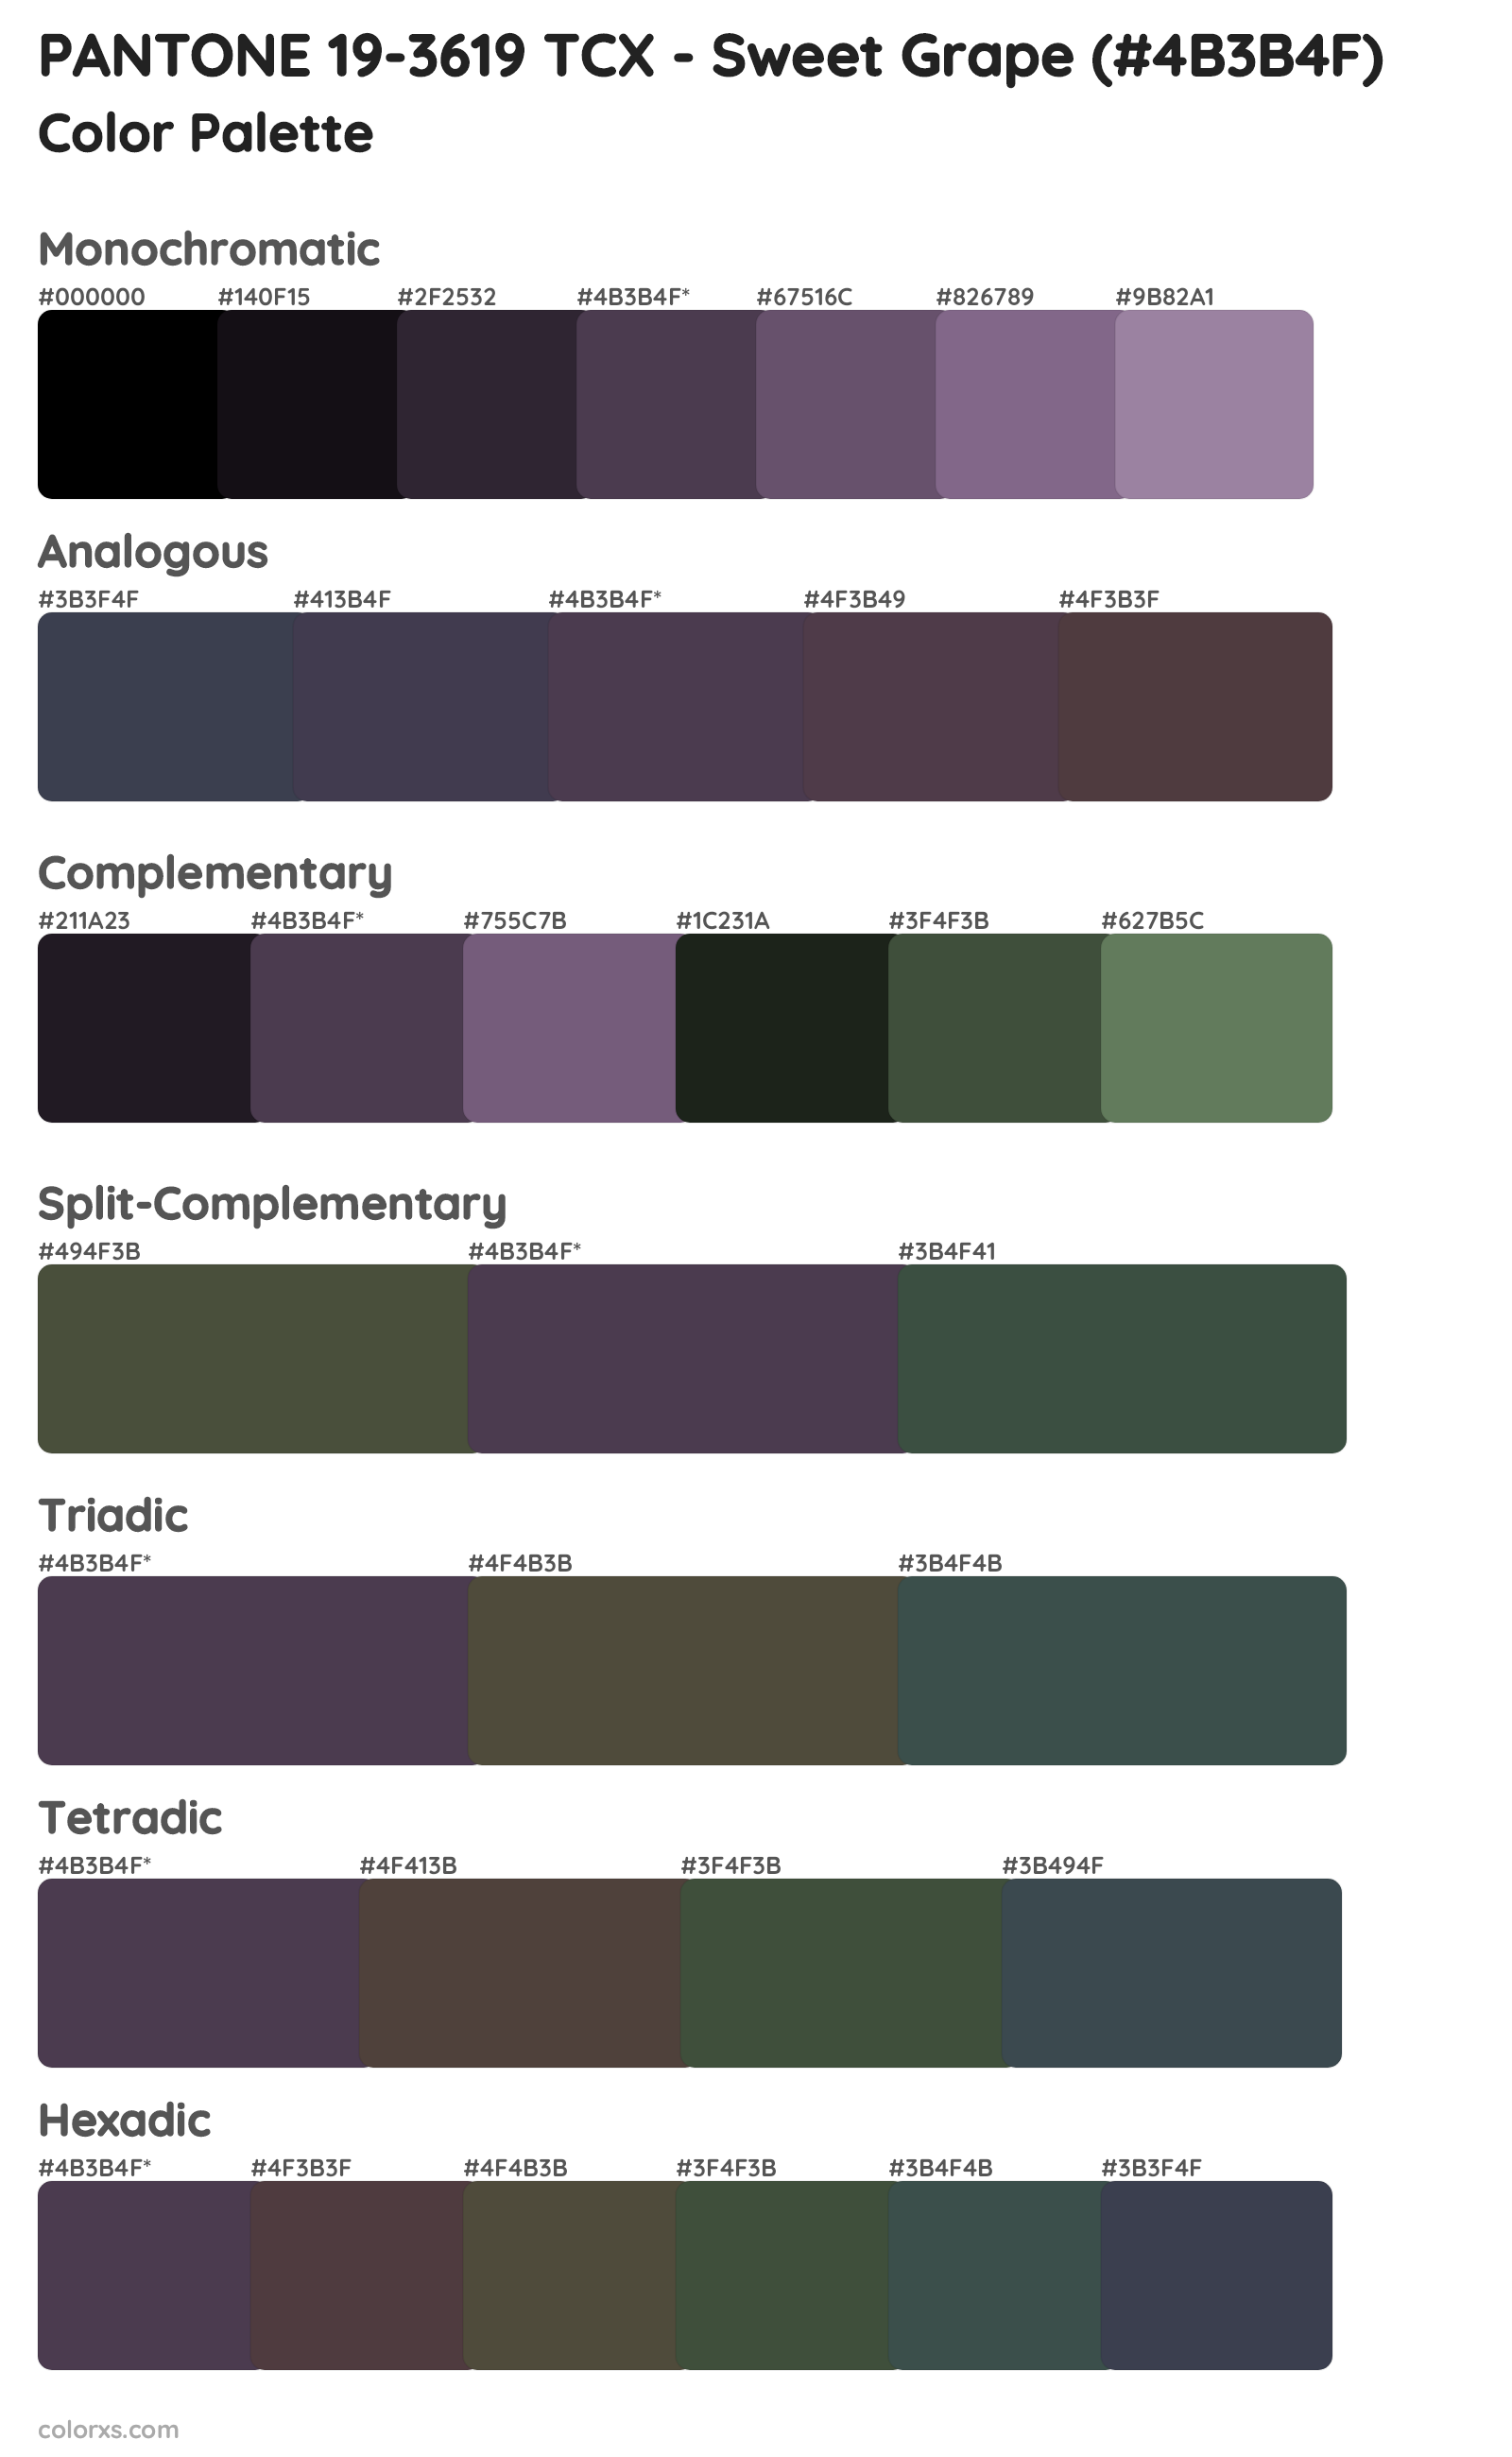 PANTONE 19-3619 TCX - Sweet Grape Color Scheme Palettes